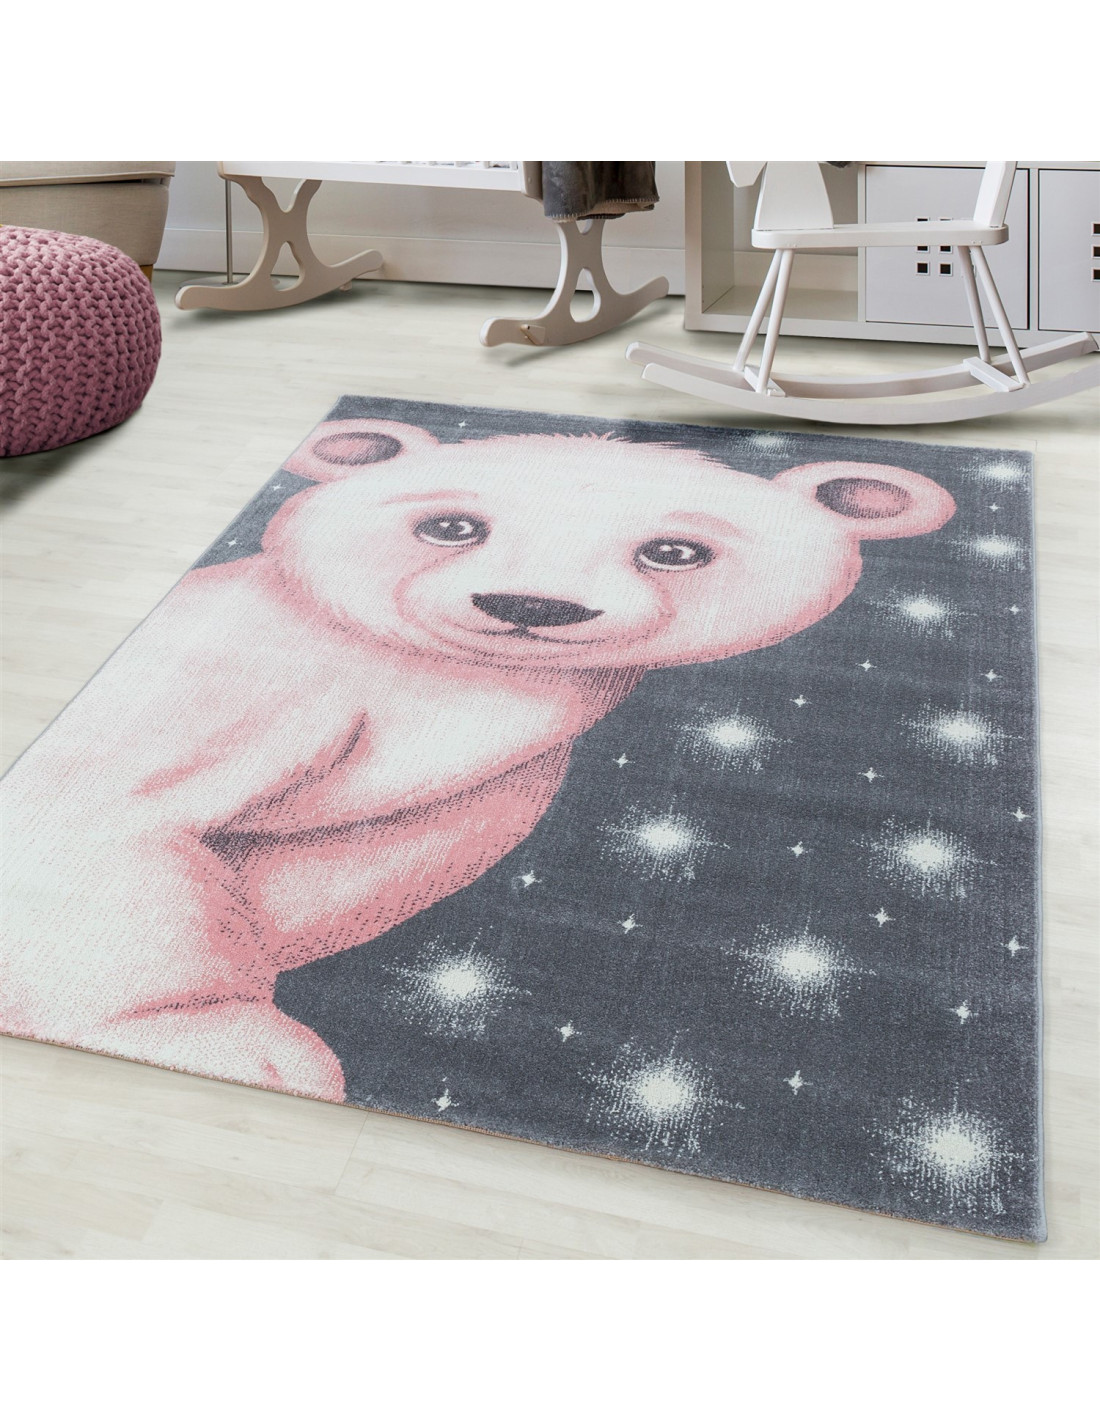 Alfombra infantil, alfombra bebe, habitación infantil, motivo nube, colores  rosa, gris y blanco